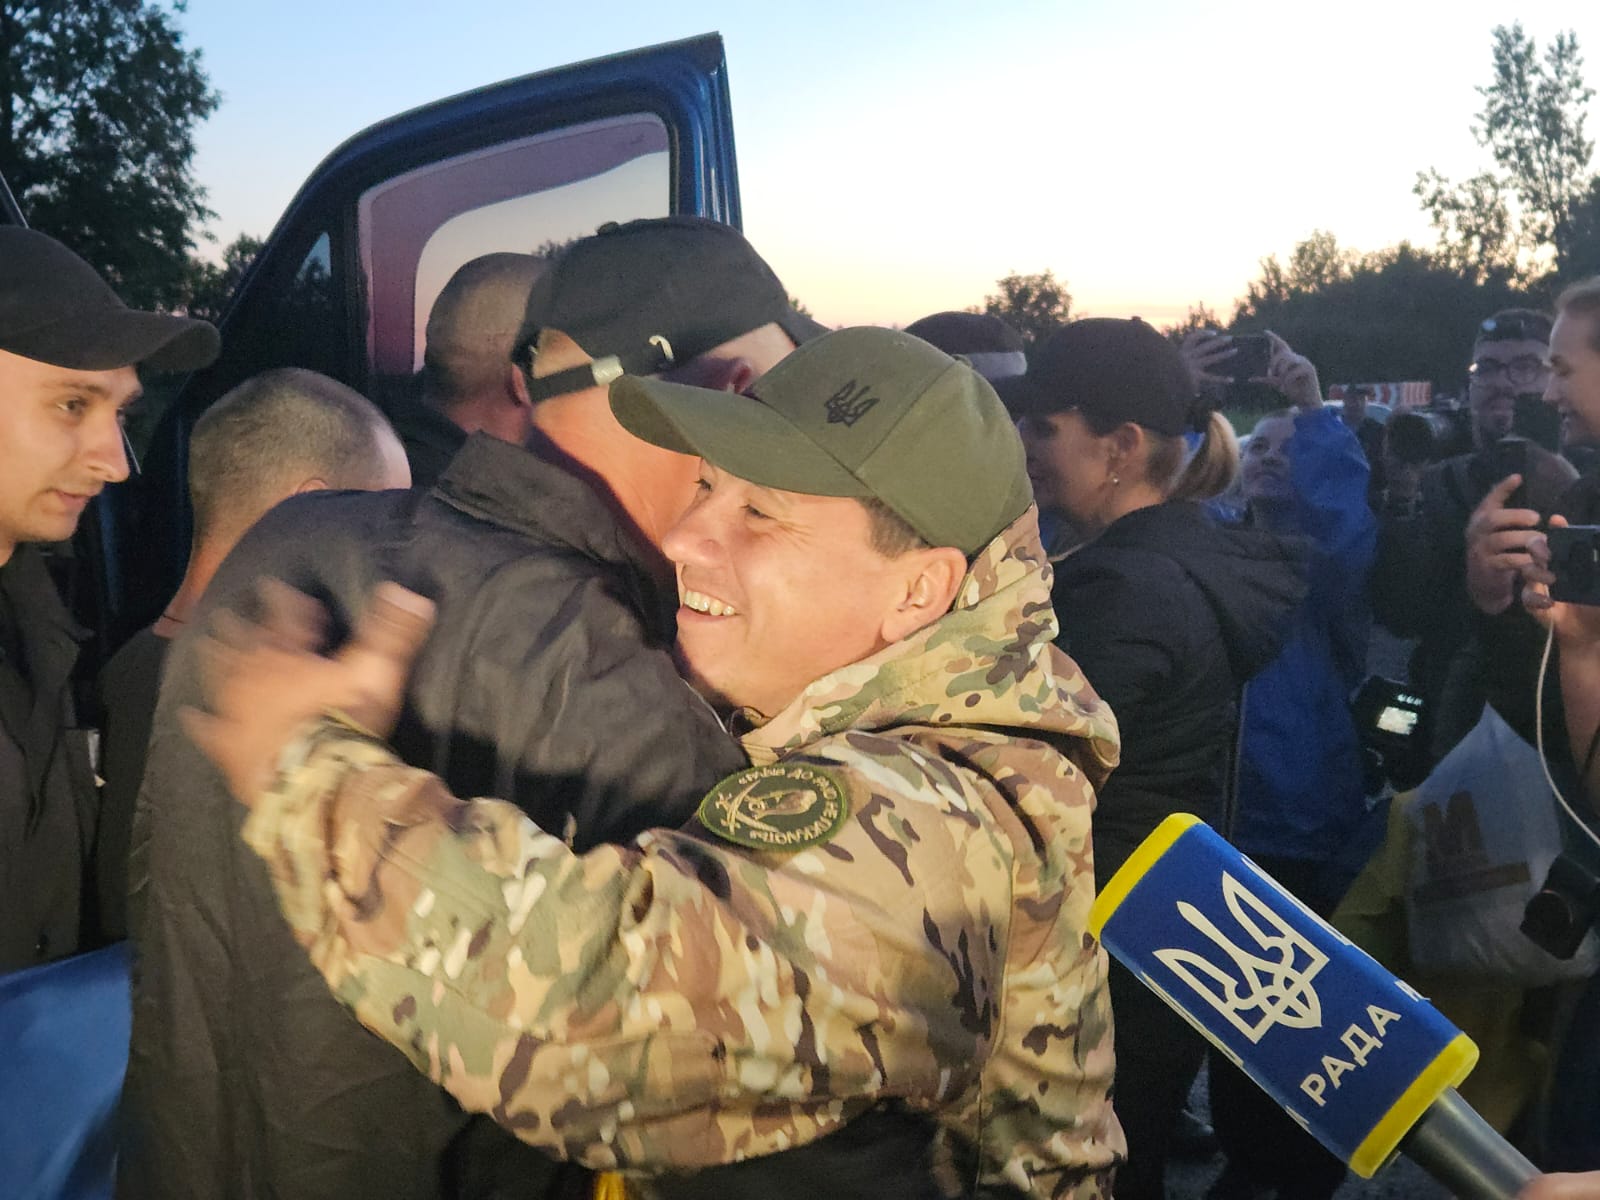 Ще 90 людей повернули з російського полону в Україну